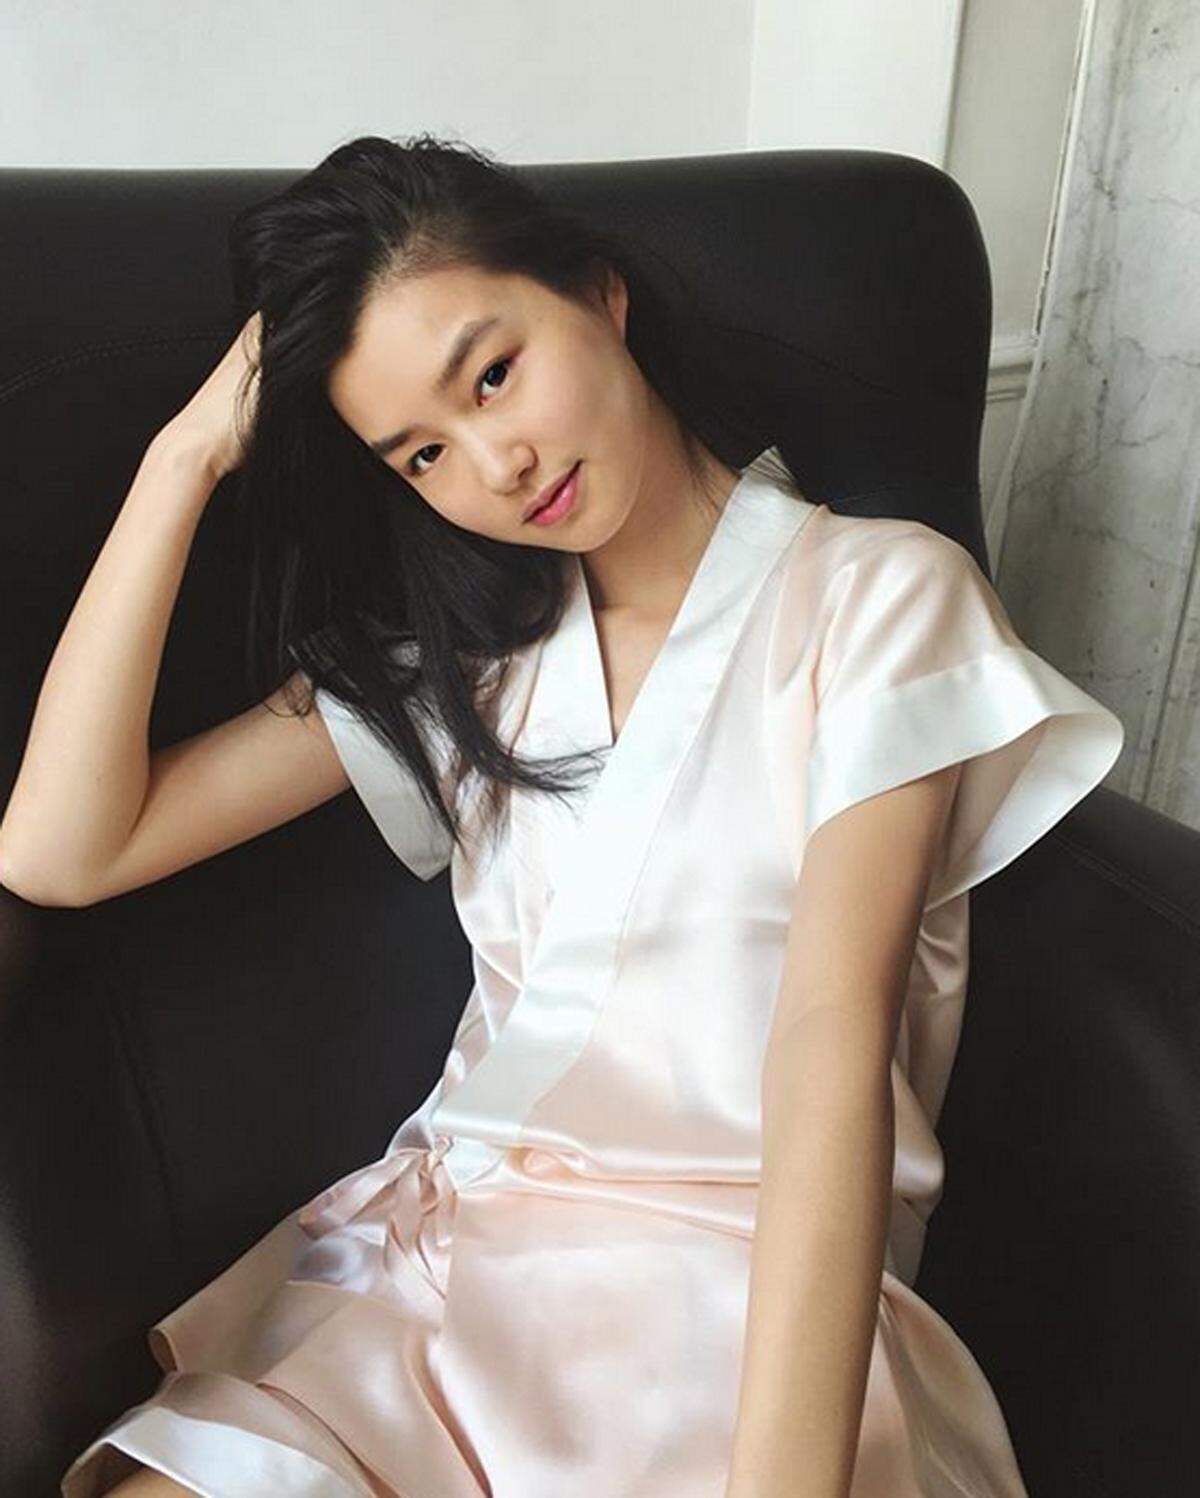 Mit 17 Jahren ist die Französin chinesischer Abstammung die Jüngste im Bunde der Victoria's-Secret-Engel. Trotzdem hat sie schon vier Jahre Model-Erfahrung.